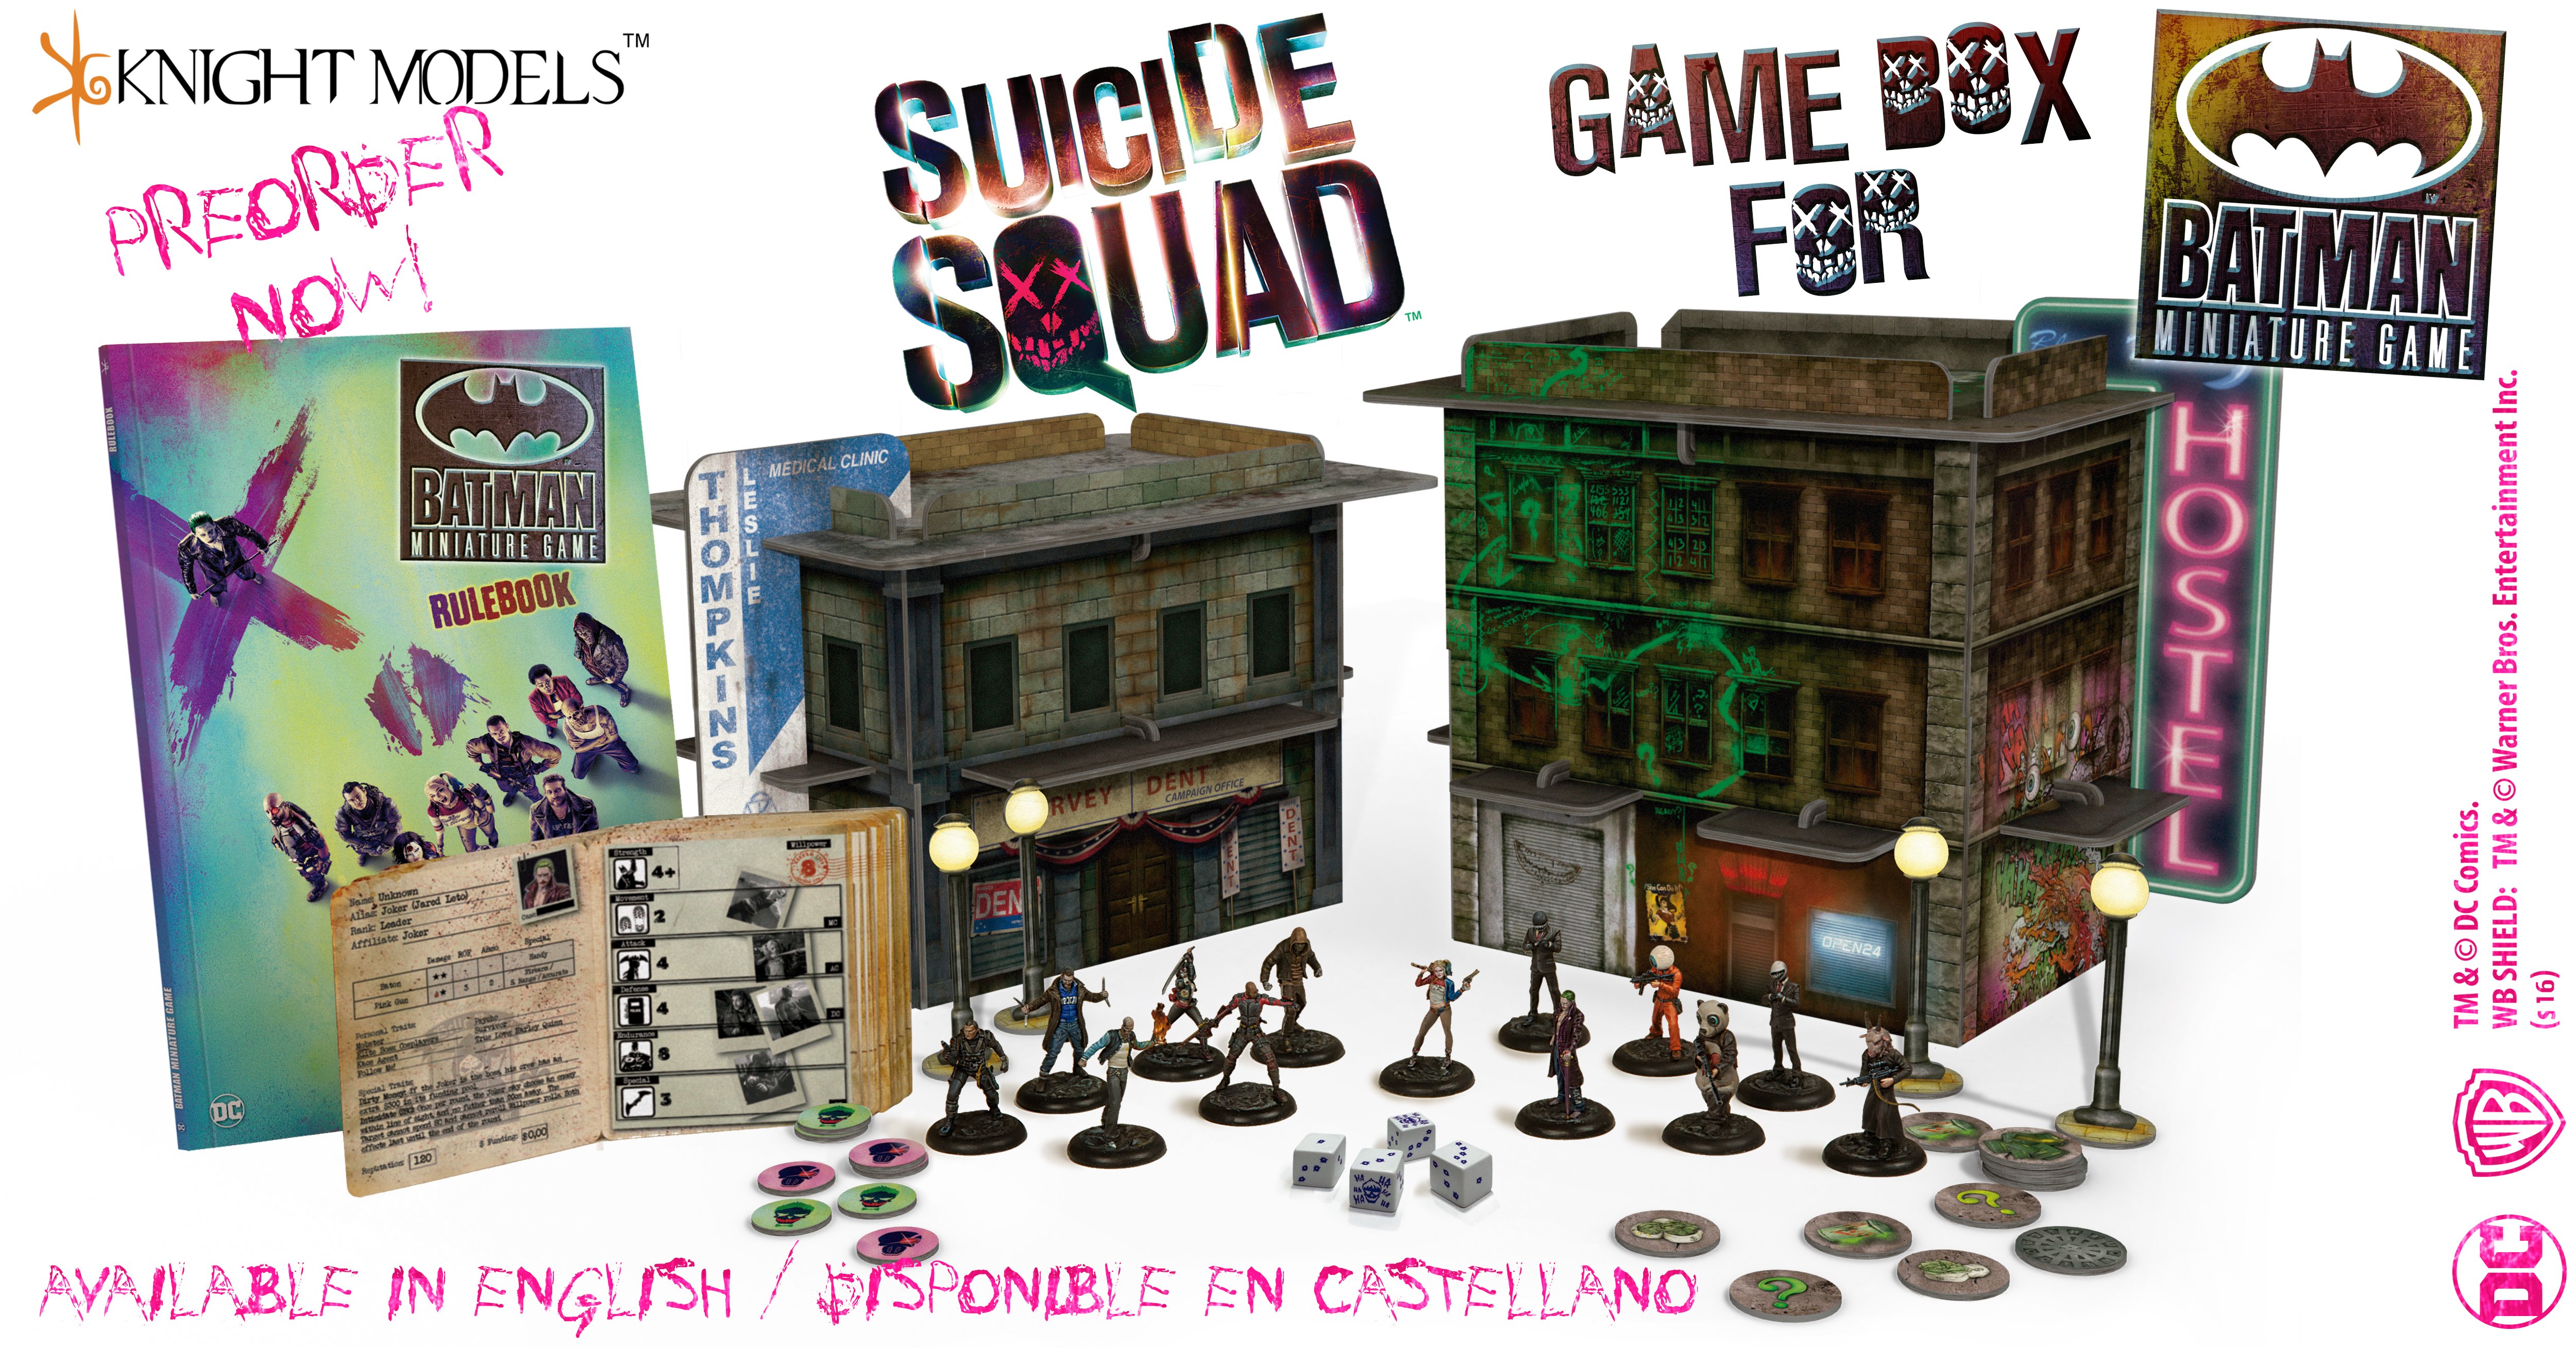 Игра сквад купить. Squad game настольная игра. Batman Miniature game. Batman Miniature game: the Suicide Squad. Batman Miniature game Cards.